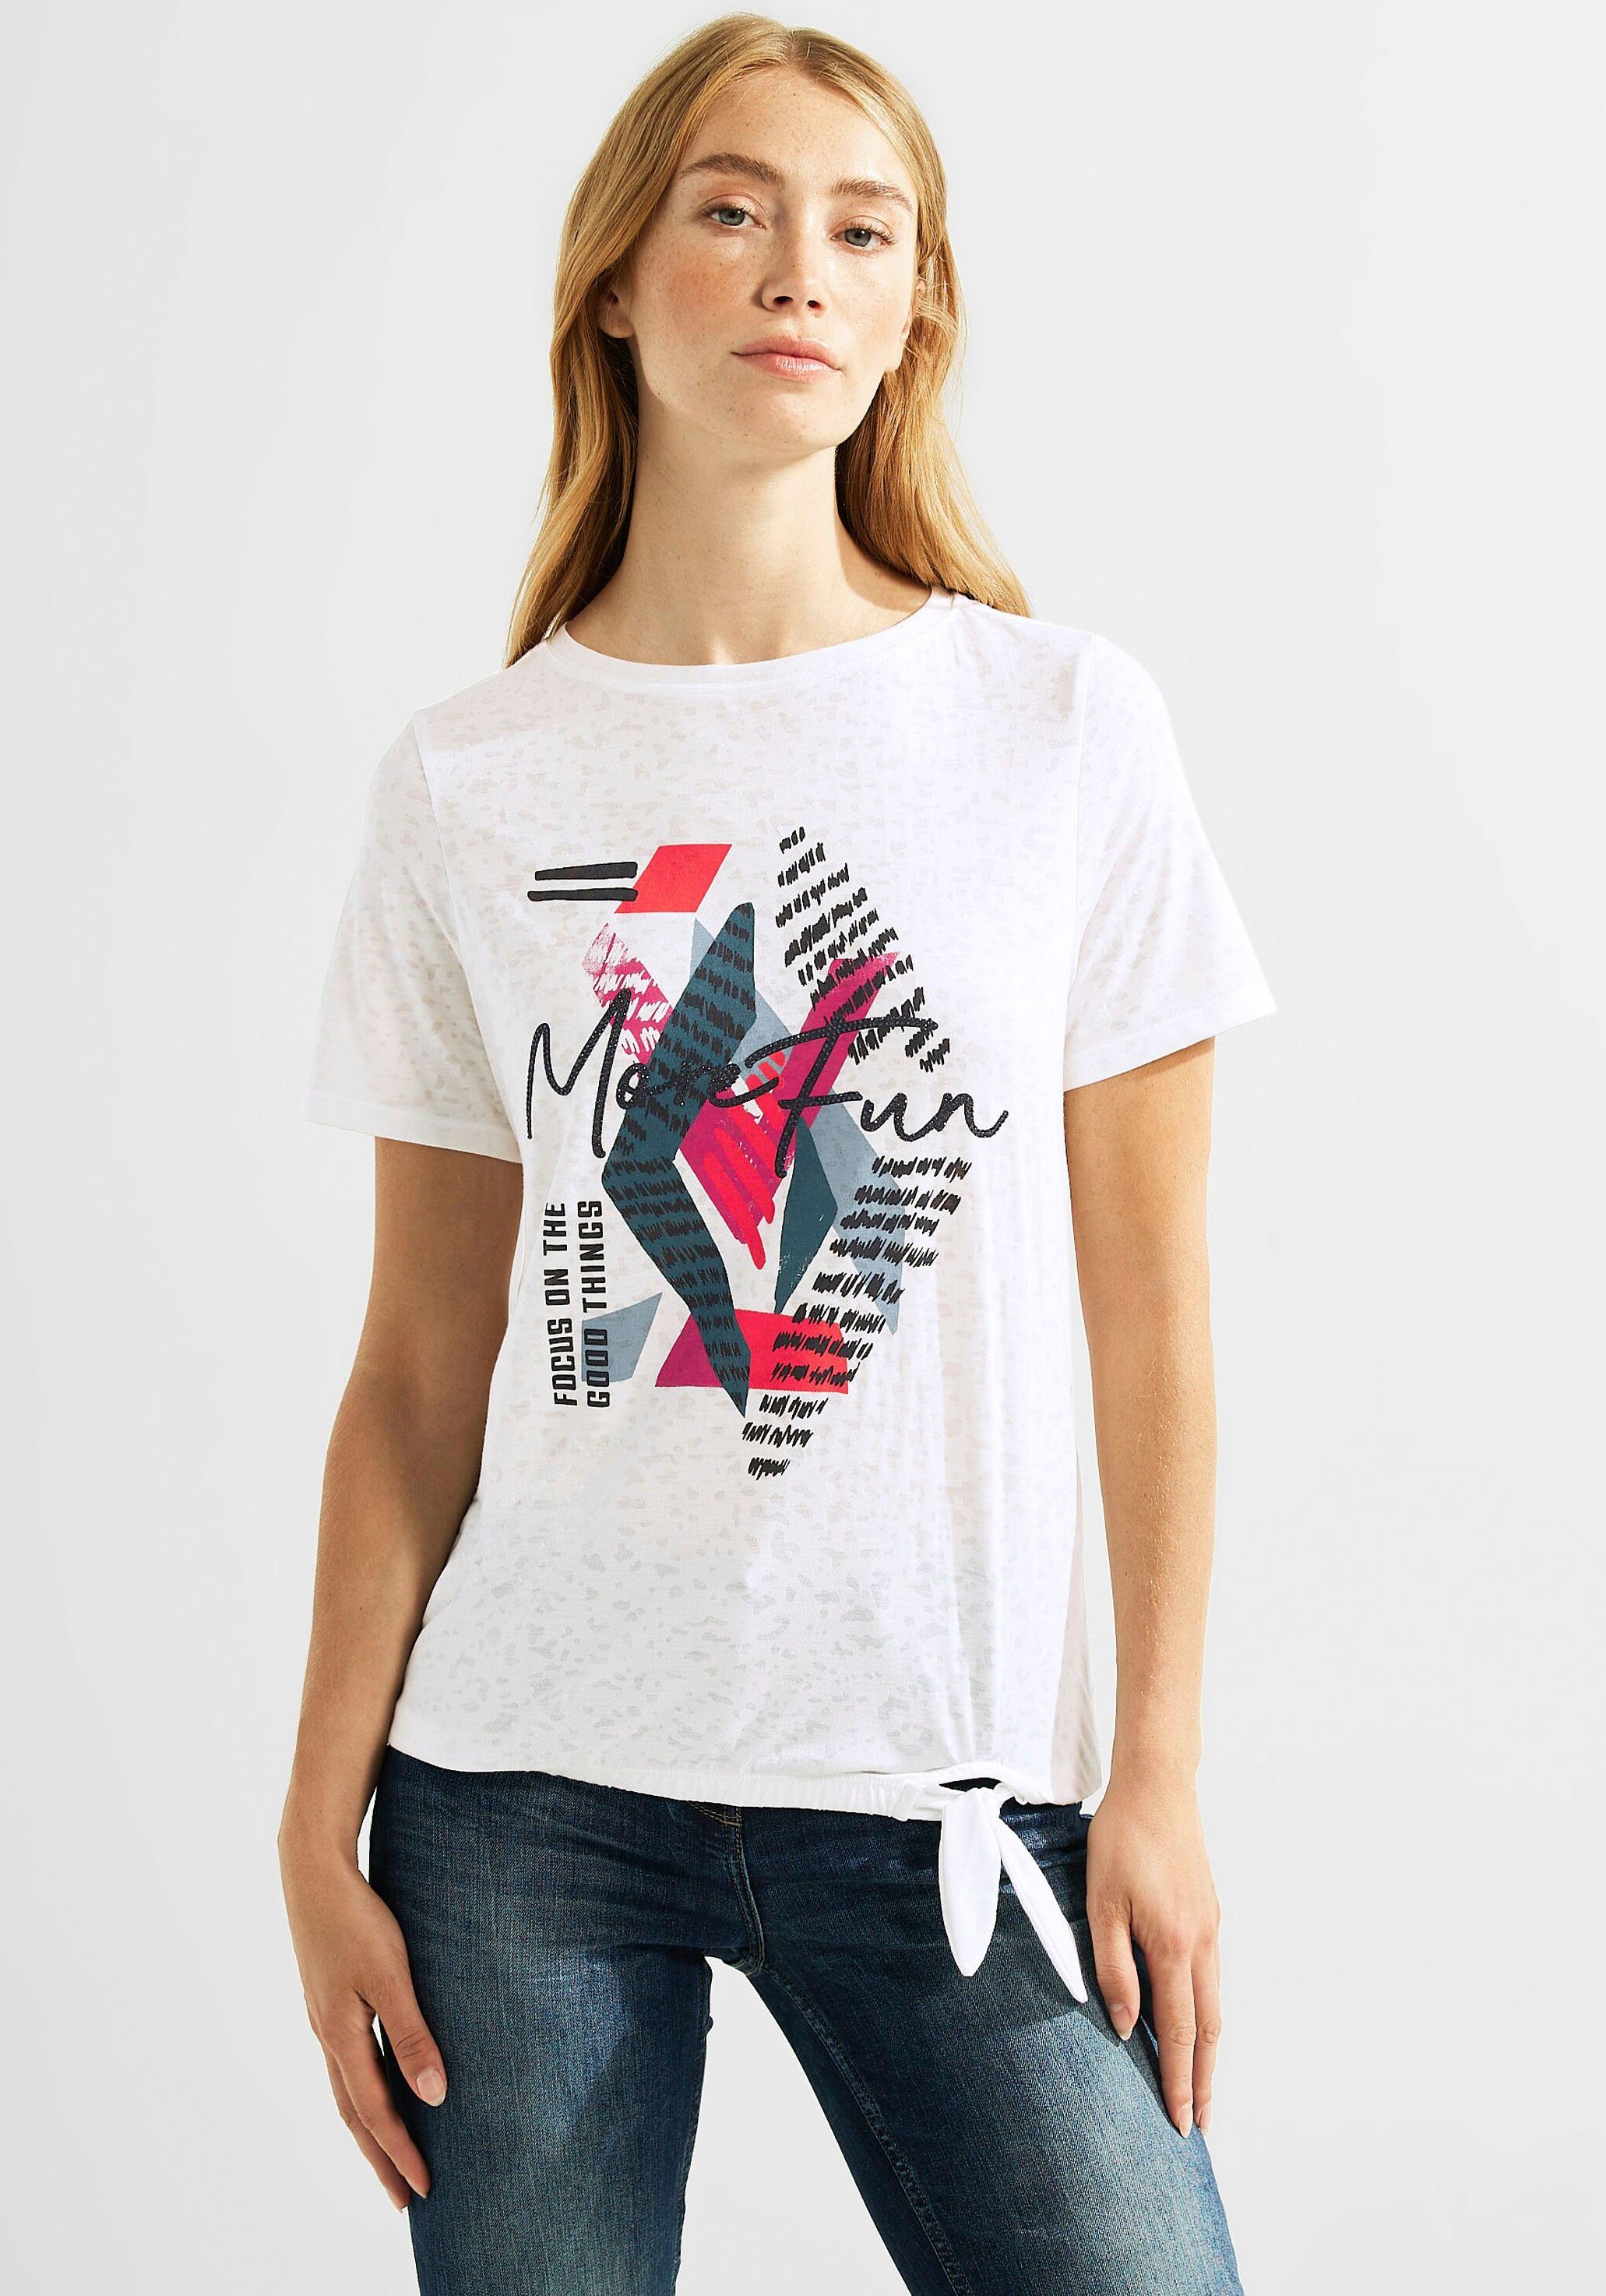 Günstige Cecil Damen T-Shirts kaufen » Cecil Damen T-Shirts SALE